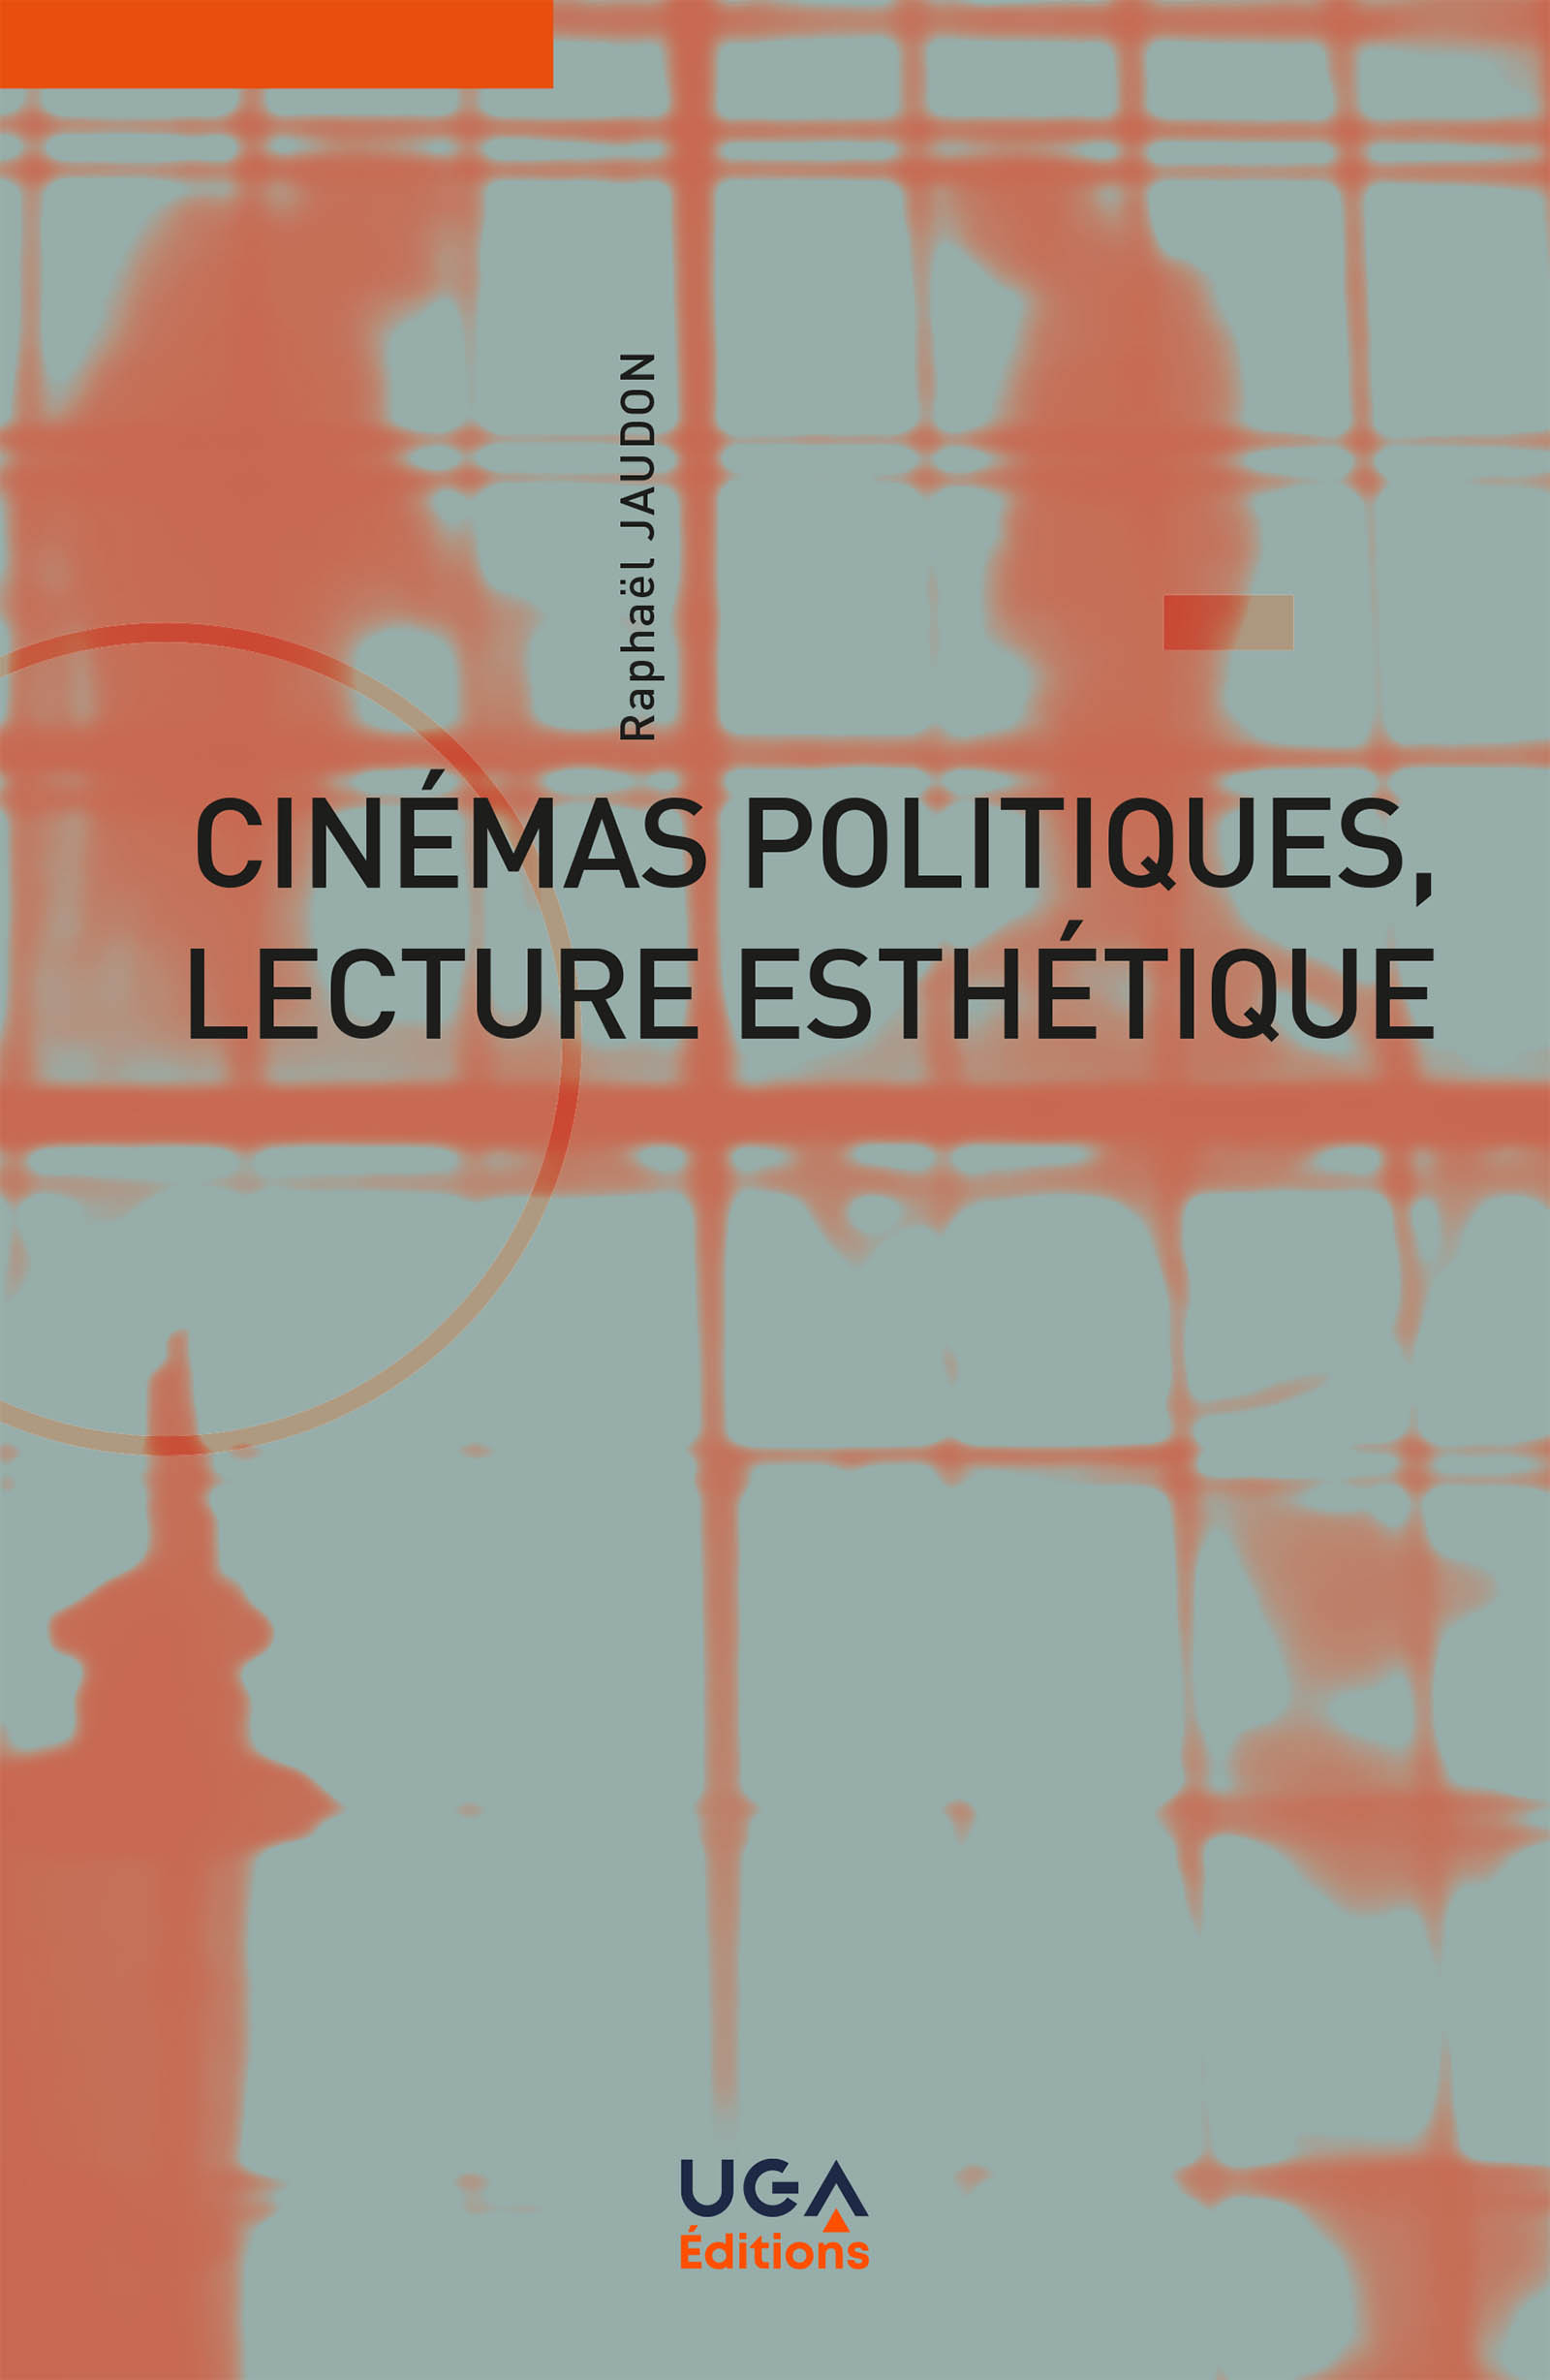 Cinémas politiques, lecture esthétique